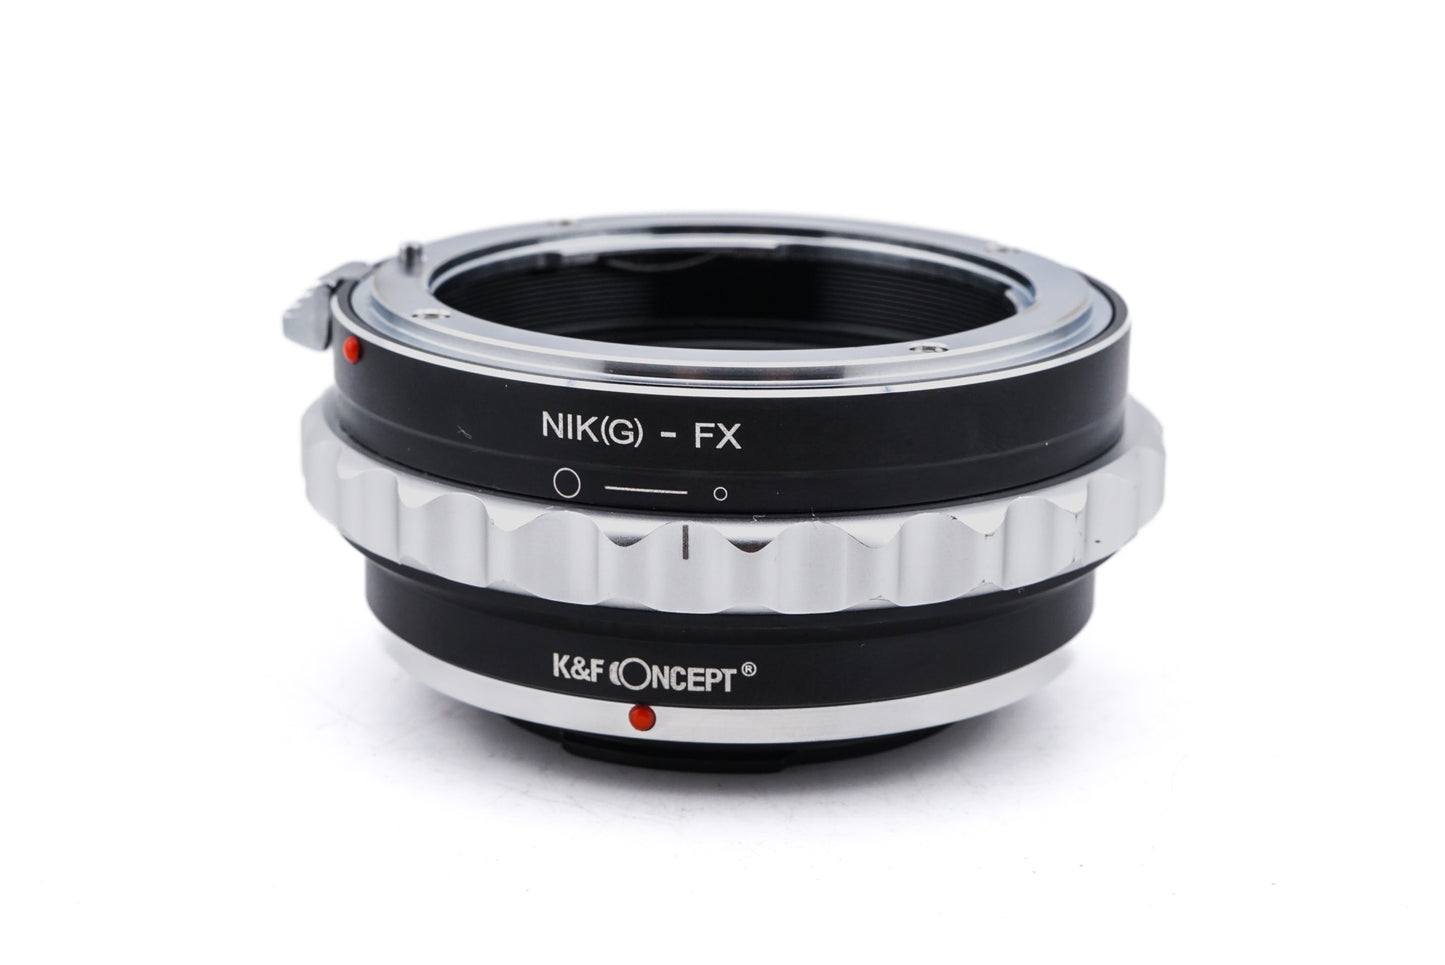 K&F Concept Nikon F(G) - Fuji FX (NIK(G) - FX) Adapter - Lens Adapter